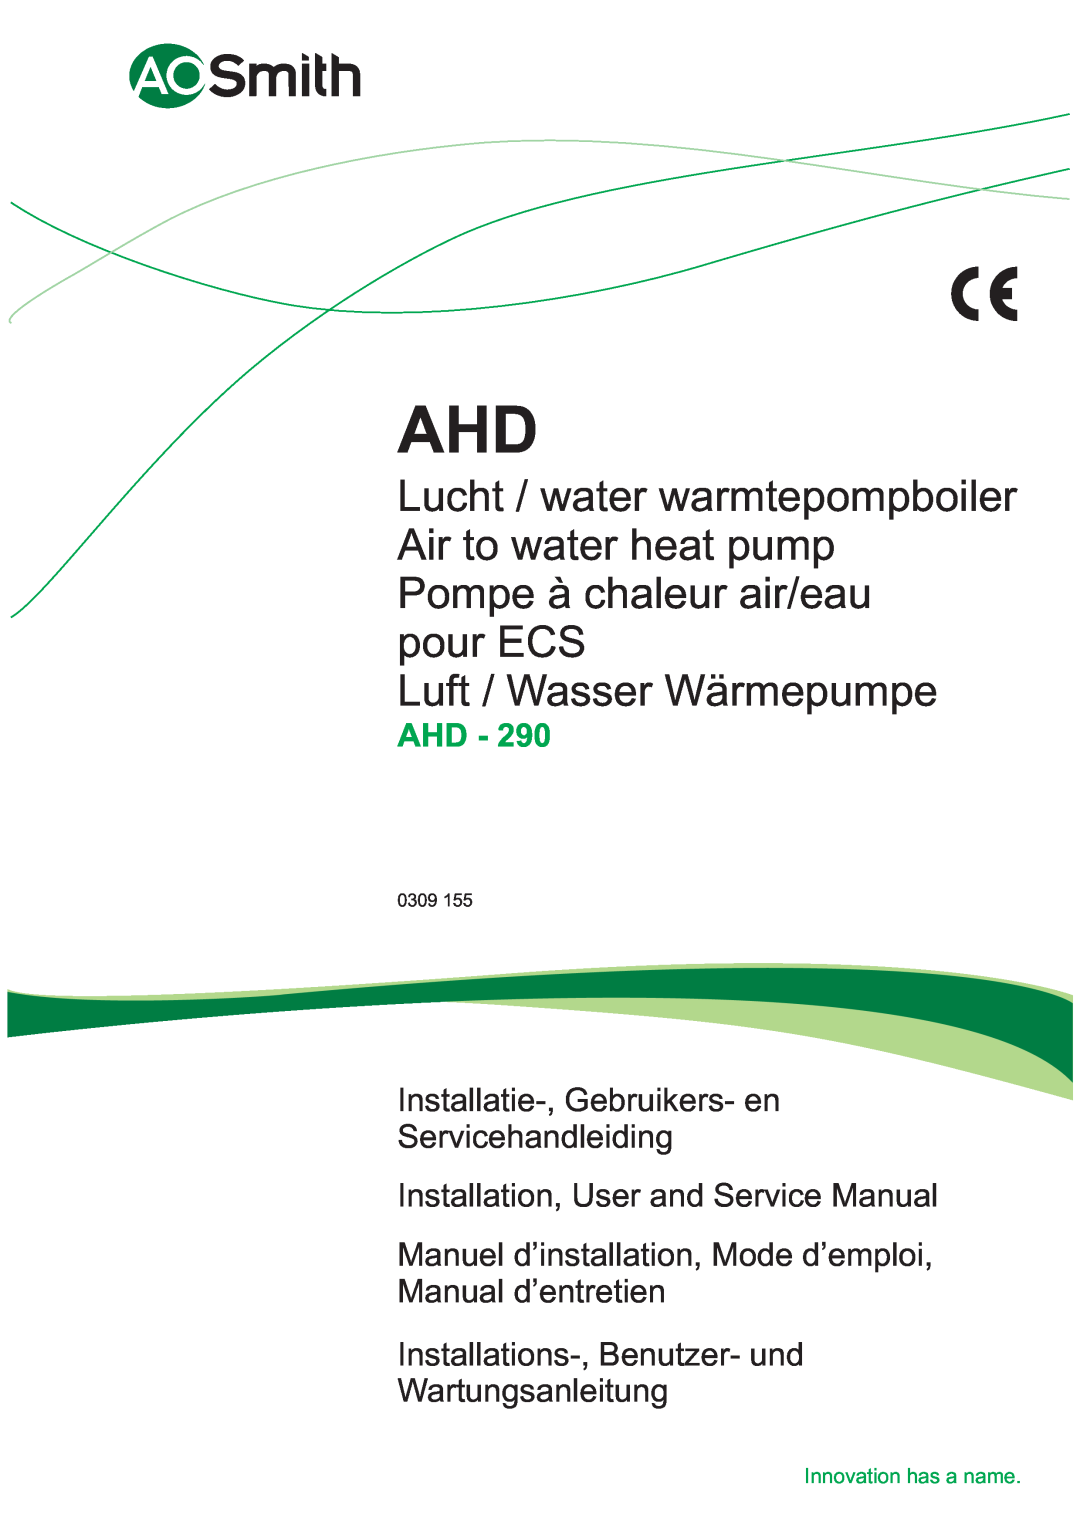 A.O. Smith 290 service manual pour ECS Luft / Wasser Wärmepumpe, Ahd, Installatie-,Gebruikers- en Servicehandleiding, 0309 